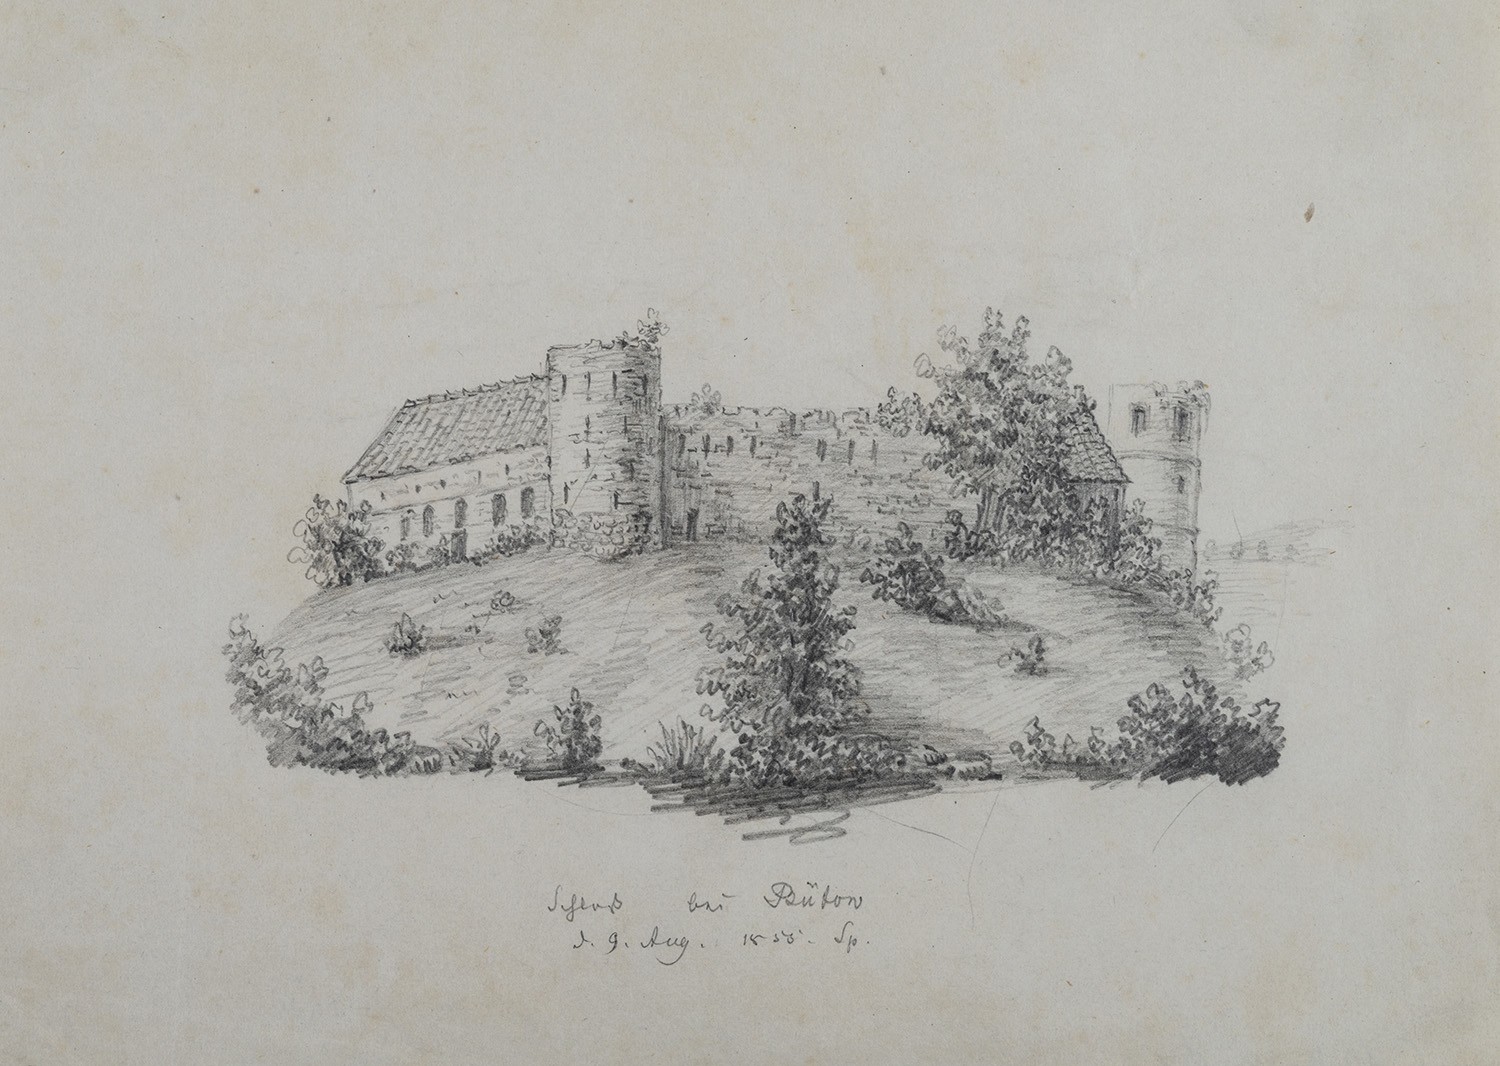 Bütow (Pommern): Burg des Deutschen Ordens (Landesgeschichtliche Vereinigung für die Mark Brandenburg e.V., Archiv CC BY)